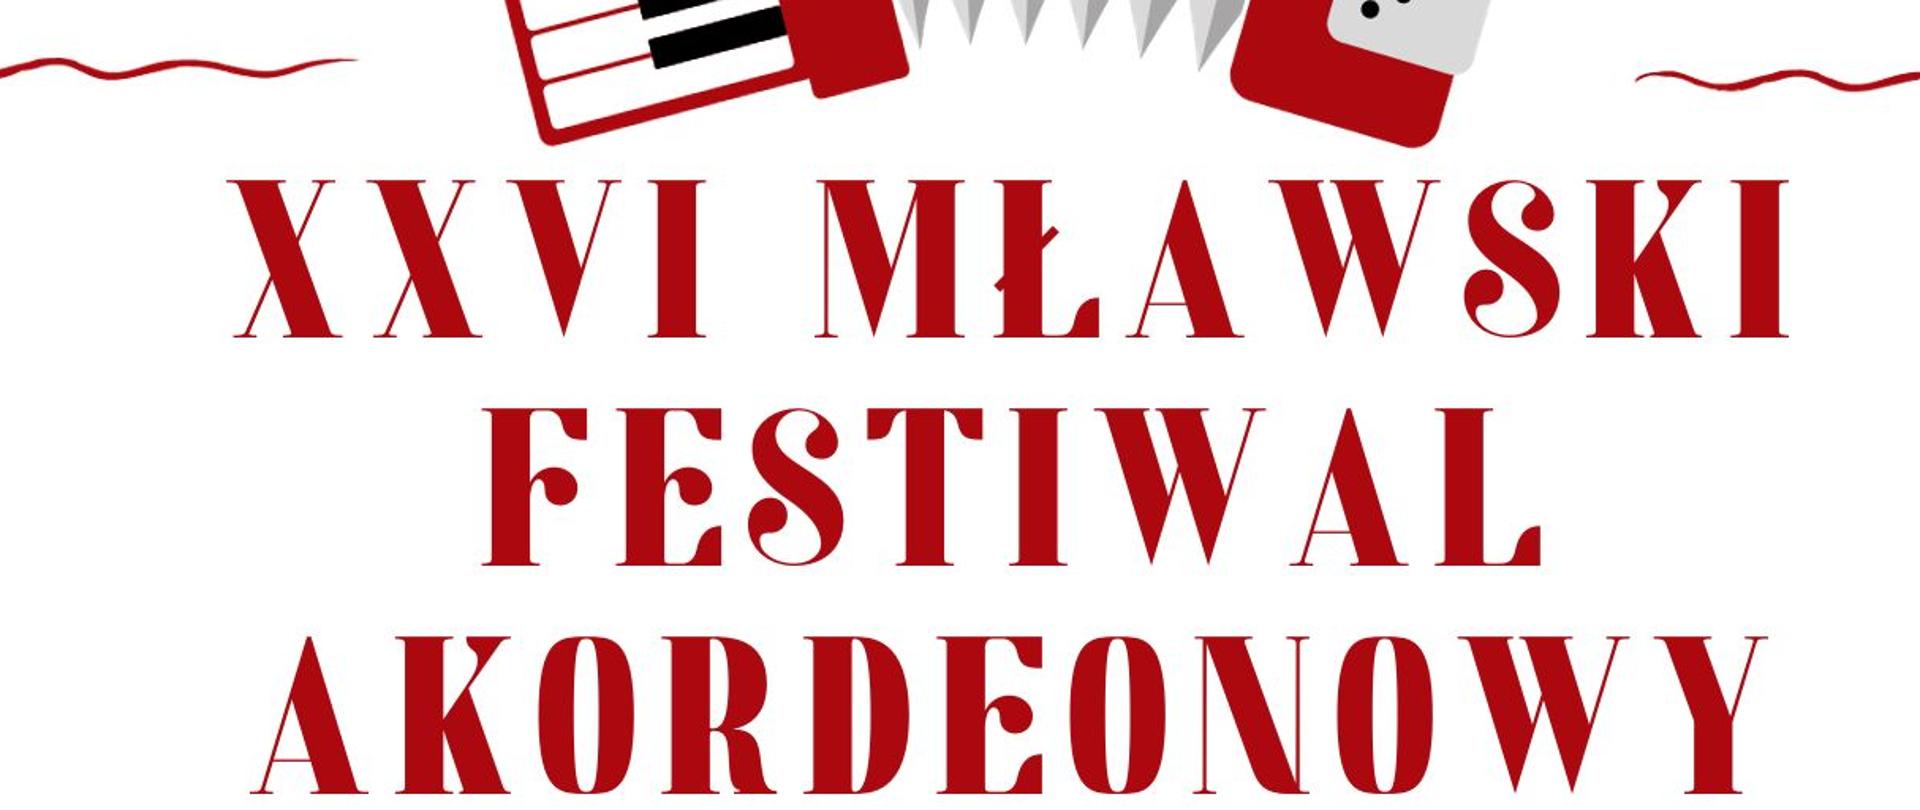 Plakat na białym tle informujący o wydarzeniu festiwalu akordeonowego z czerwonymi elementami